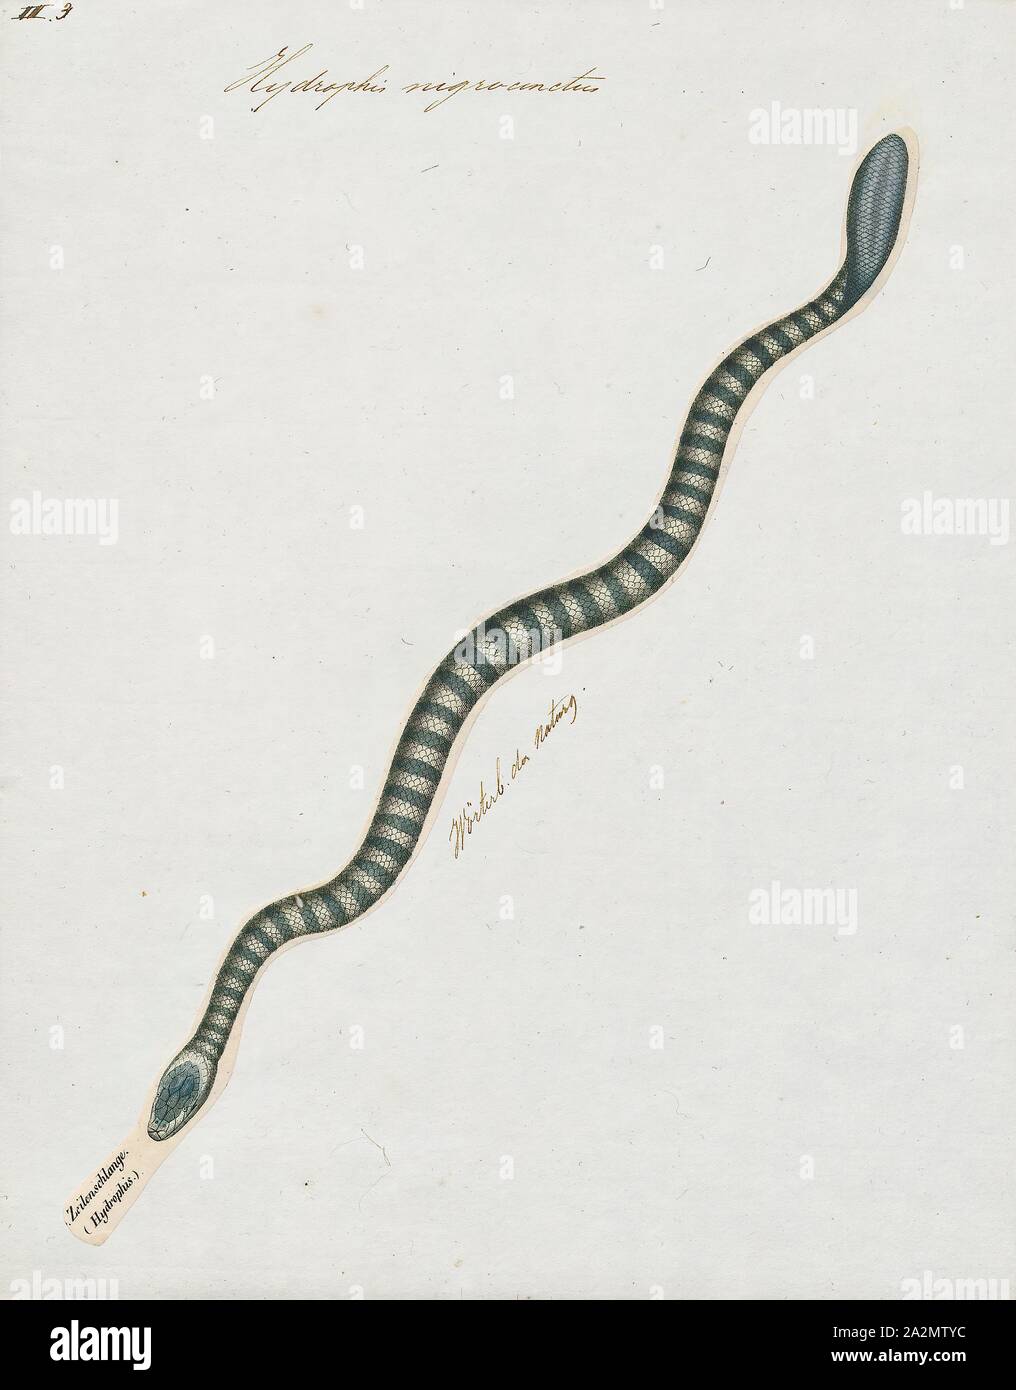 Hydrophis nigrocinctus, Imprimir Hydrophis nigrocinctus es una especies de serpientes venenosas Elapidae (Hydrophiinae-serpiente de mar). Distribución: Océano Índico: la India, Bangladesh, Sri Lanka, Myanmar (= Birmania), Tailandia, Malasia, 1700-1880. Foto de stock